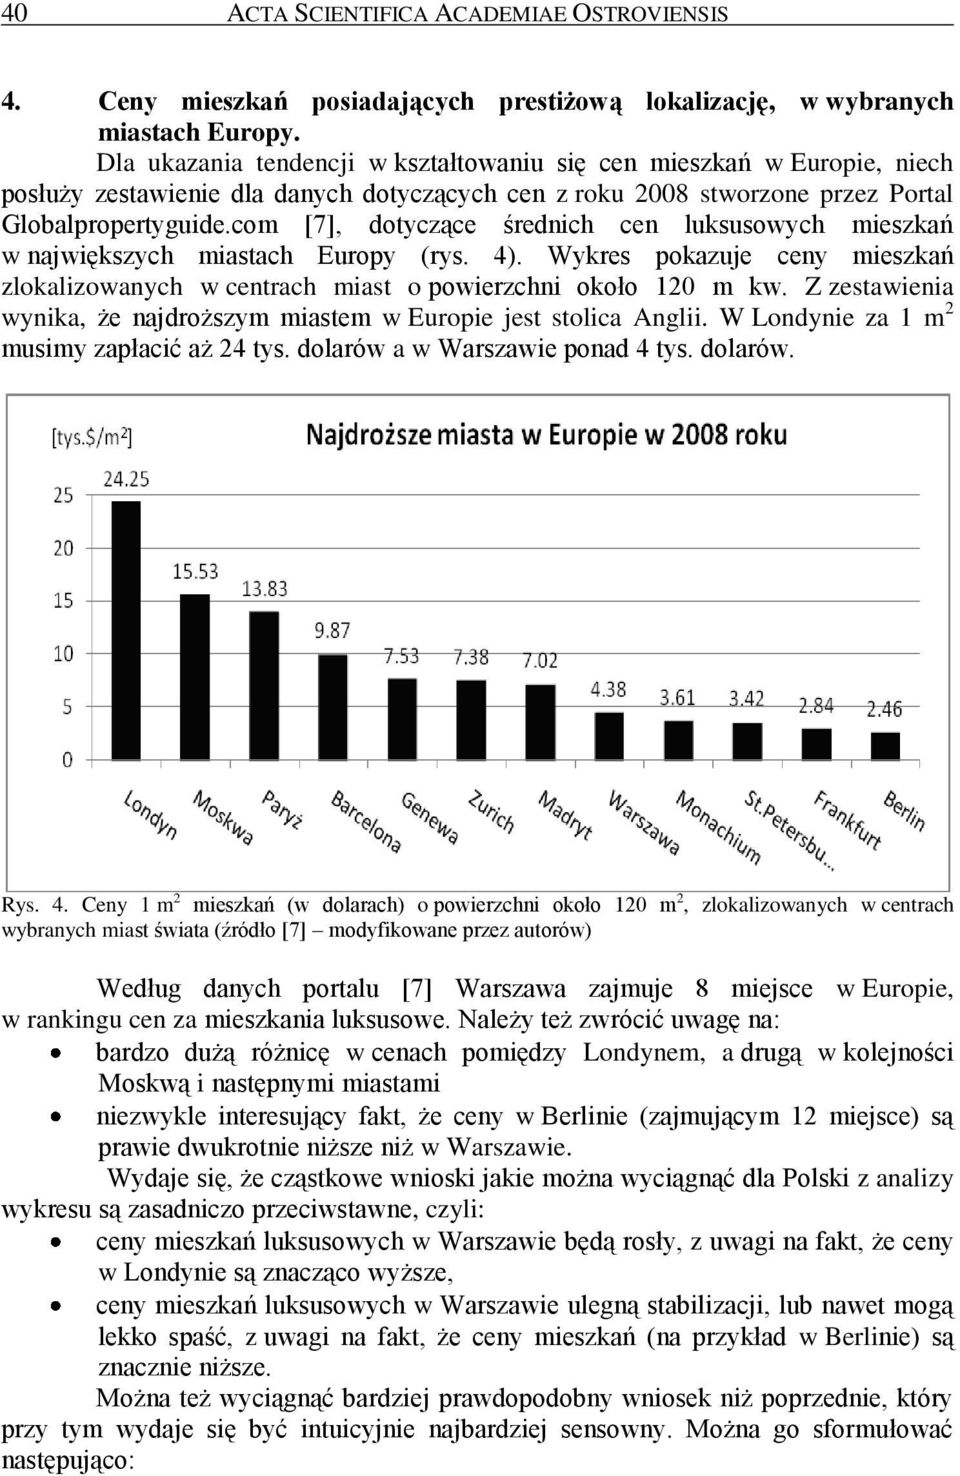 com [7], dotyczące średnich cen luksusowych mieszkań w największych miastach Europy (rys. 4). Wykres pokazuje ceny mieszkań zlokalizowanych w centrach miast o powierzchni około 120 m kw.